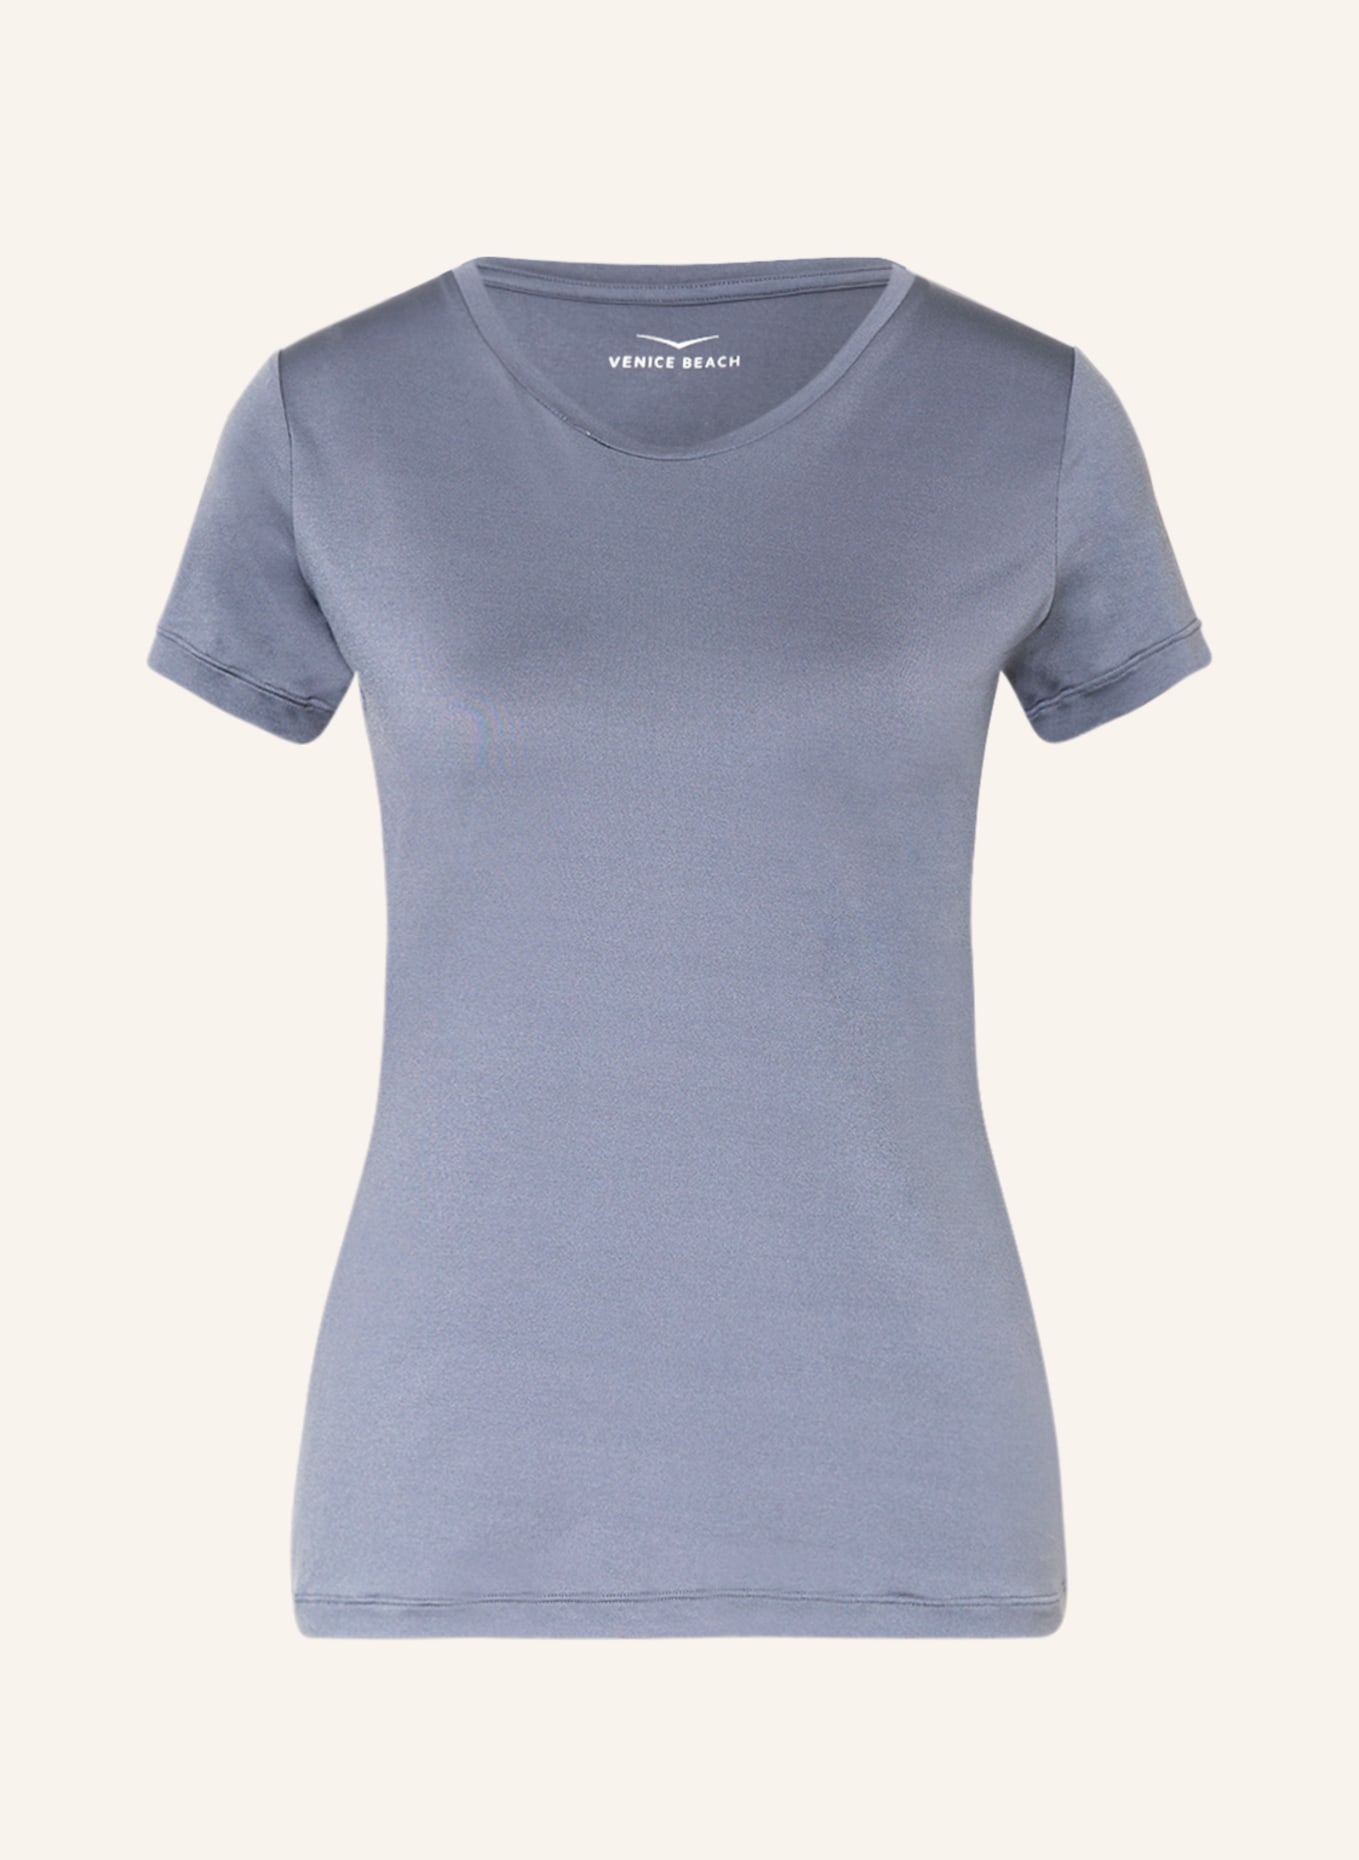 VENICE BEACH T-shirt DEANNA, Color: BLUE GRAY (Image 1)